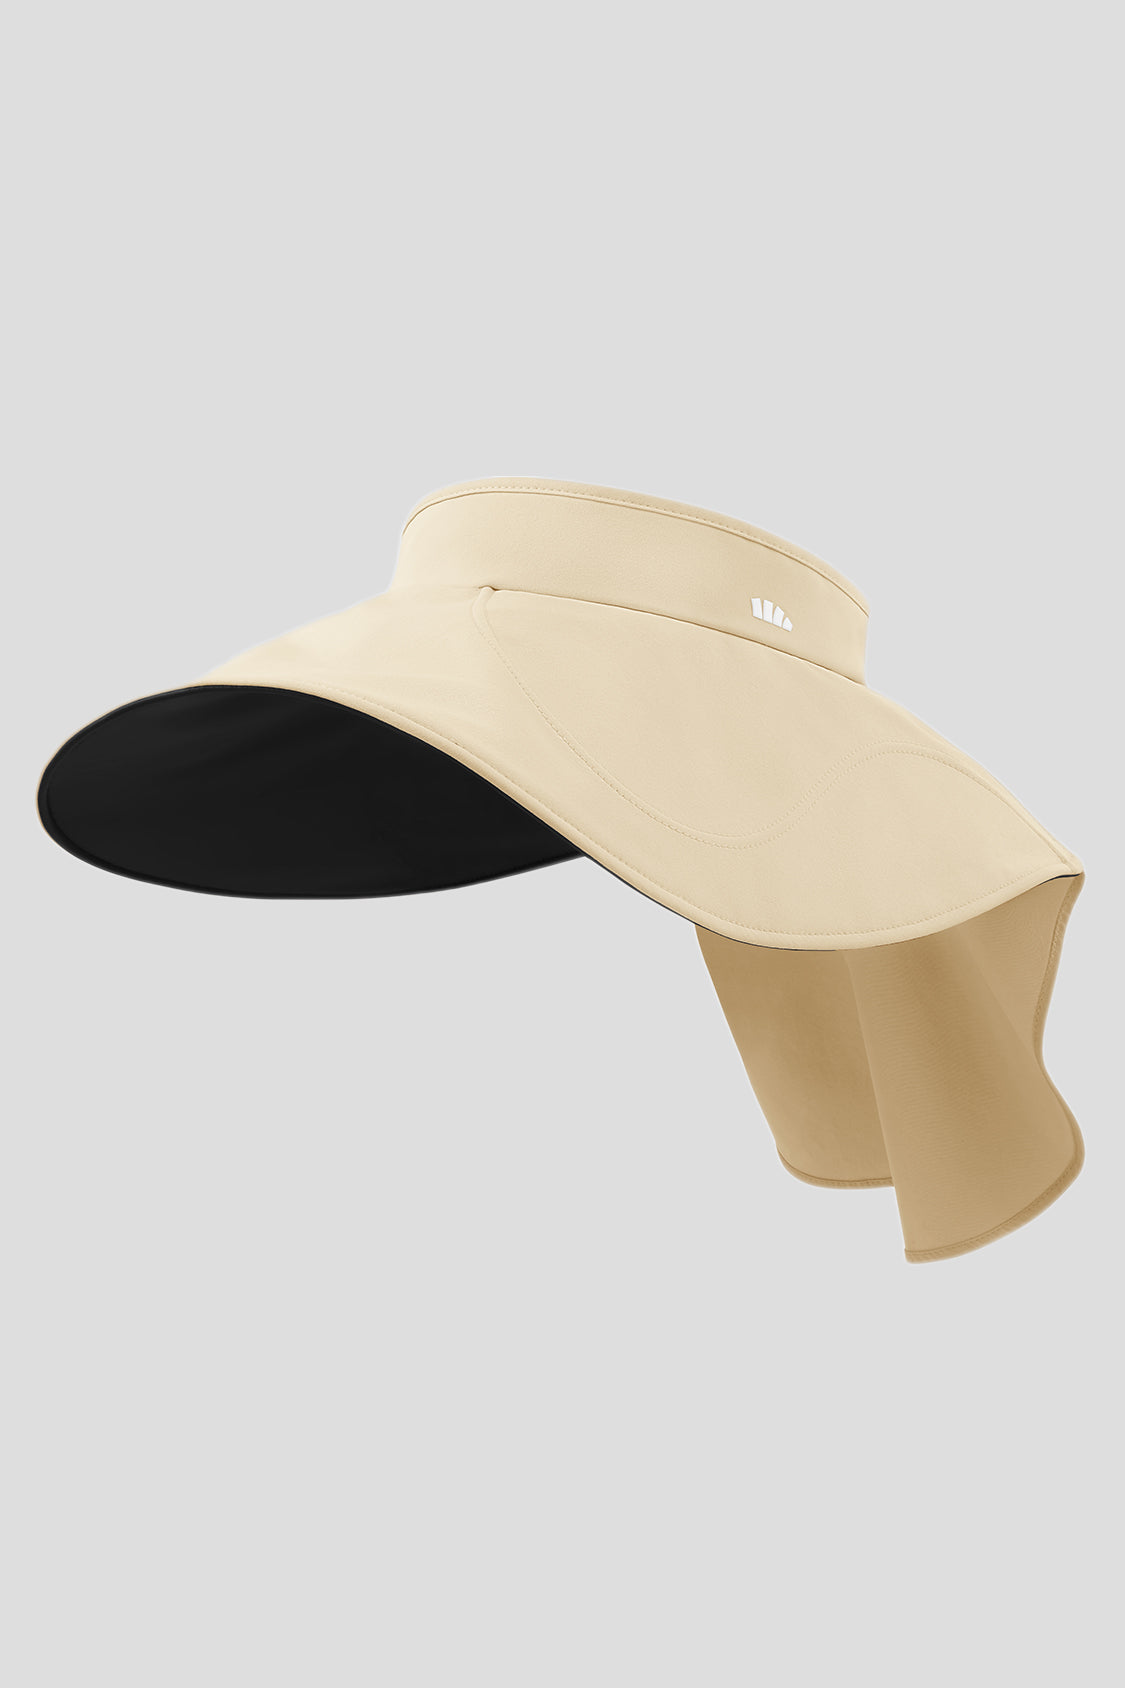 Omelet - Women's Sun Protection Hat UPF50+ Black / 55-58 cm